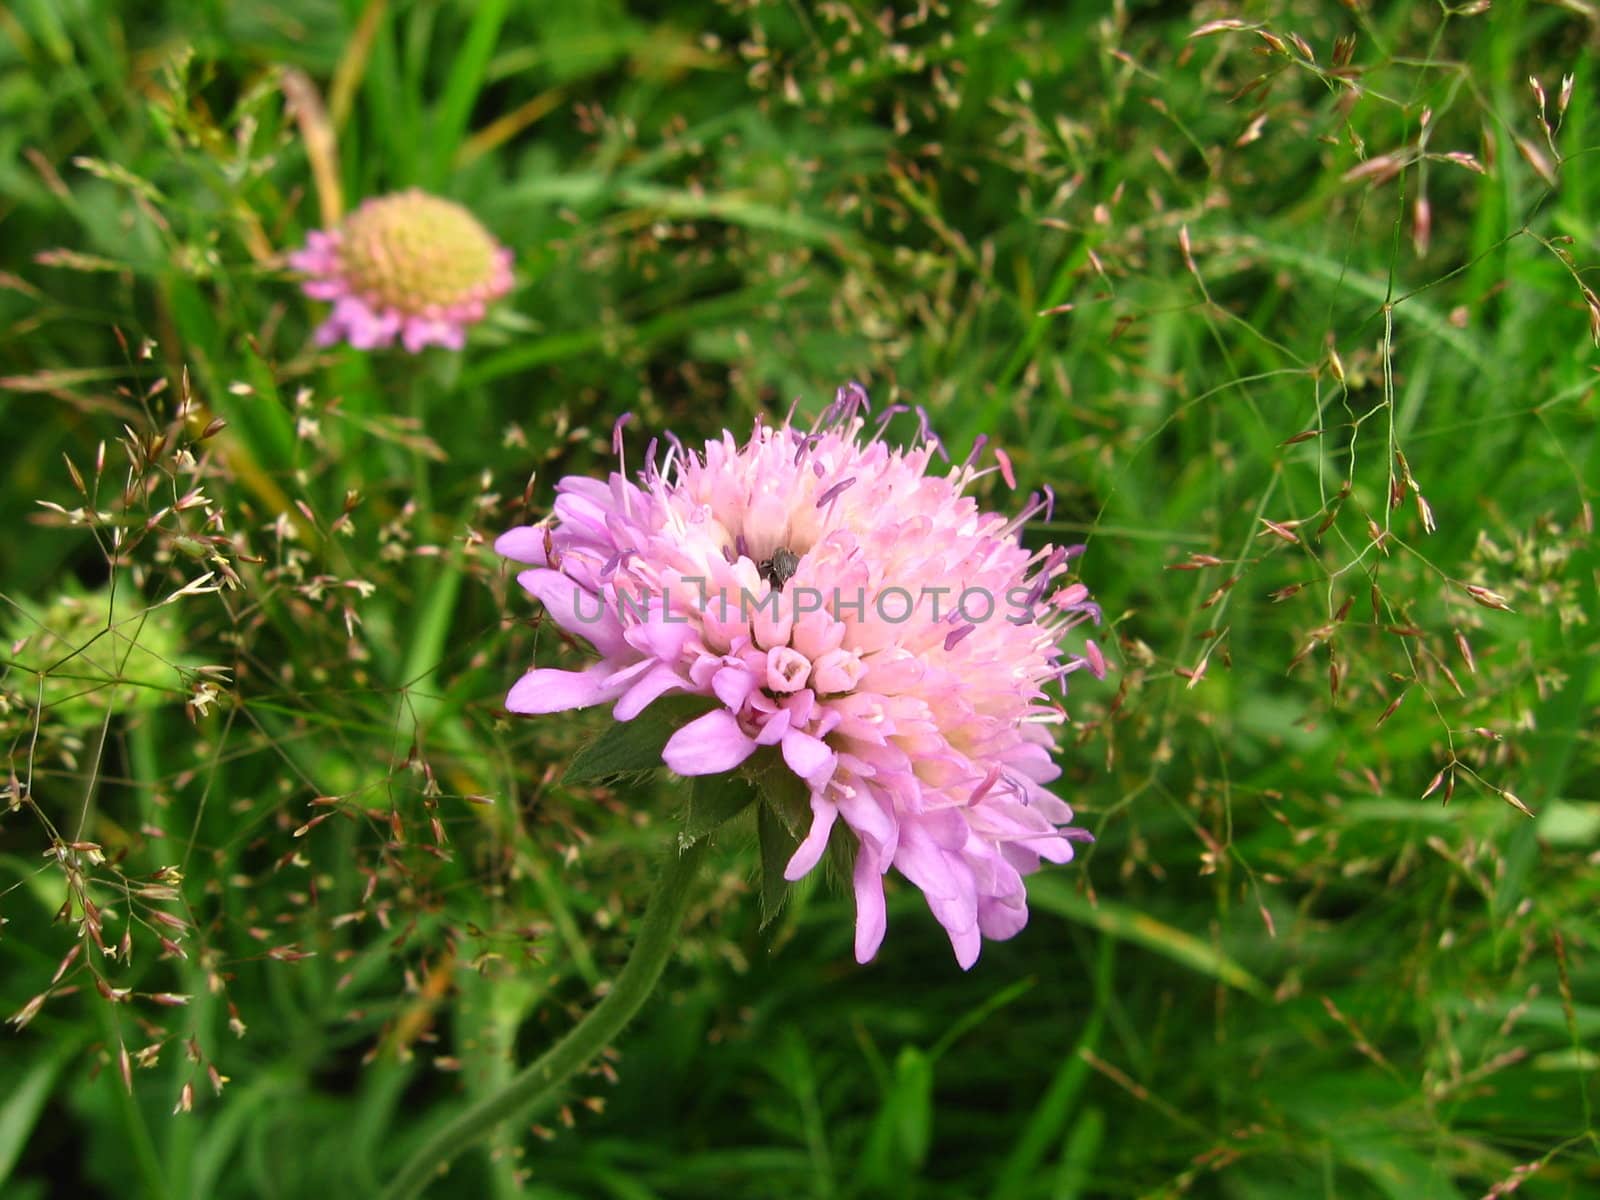 Beautiful modest sunny flower in green field